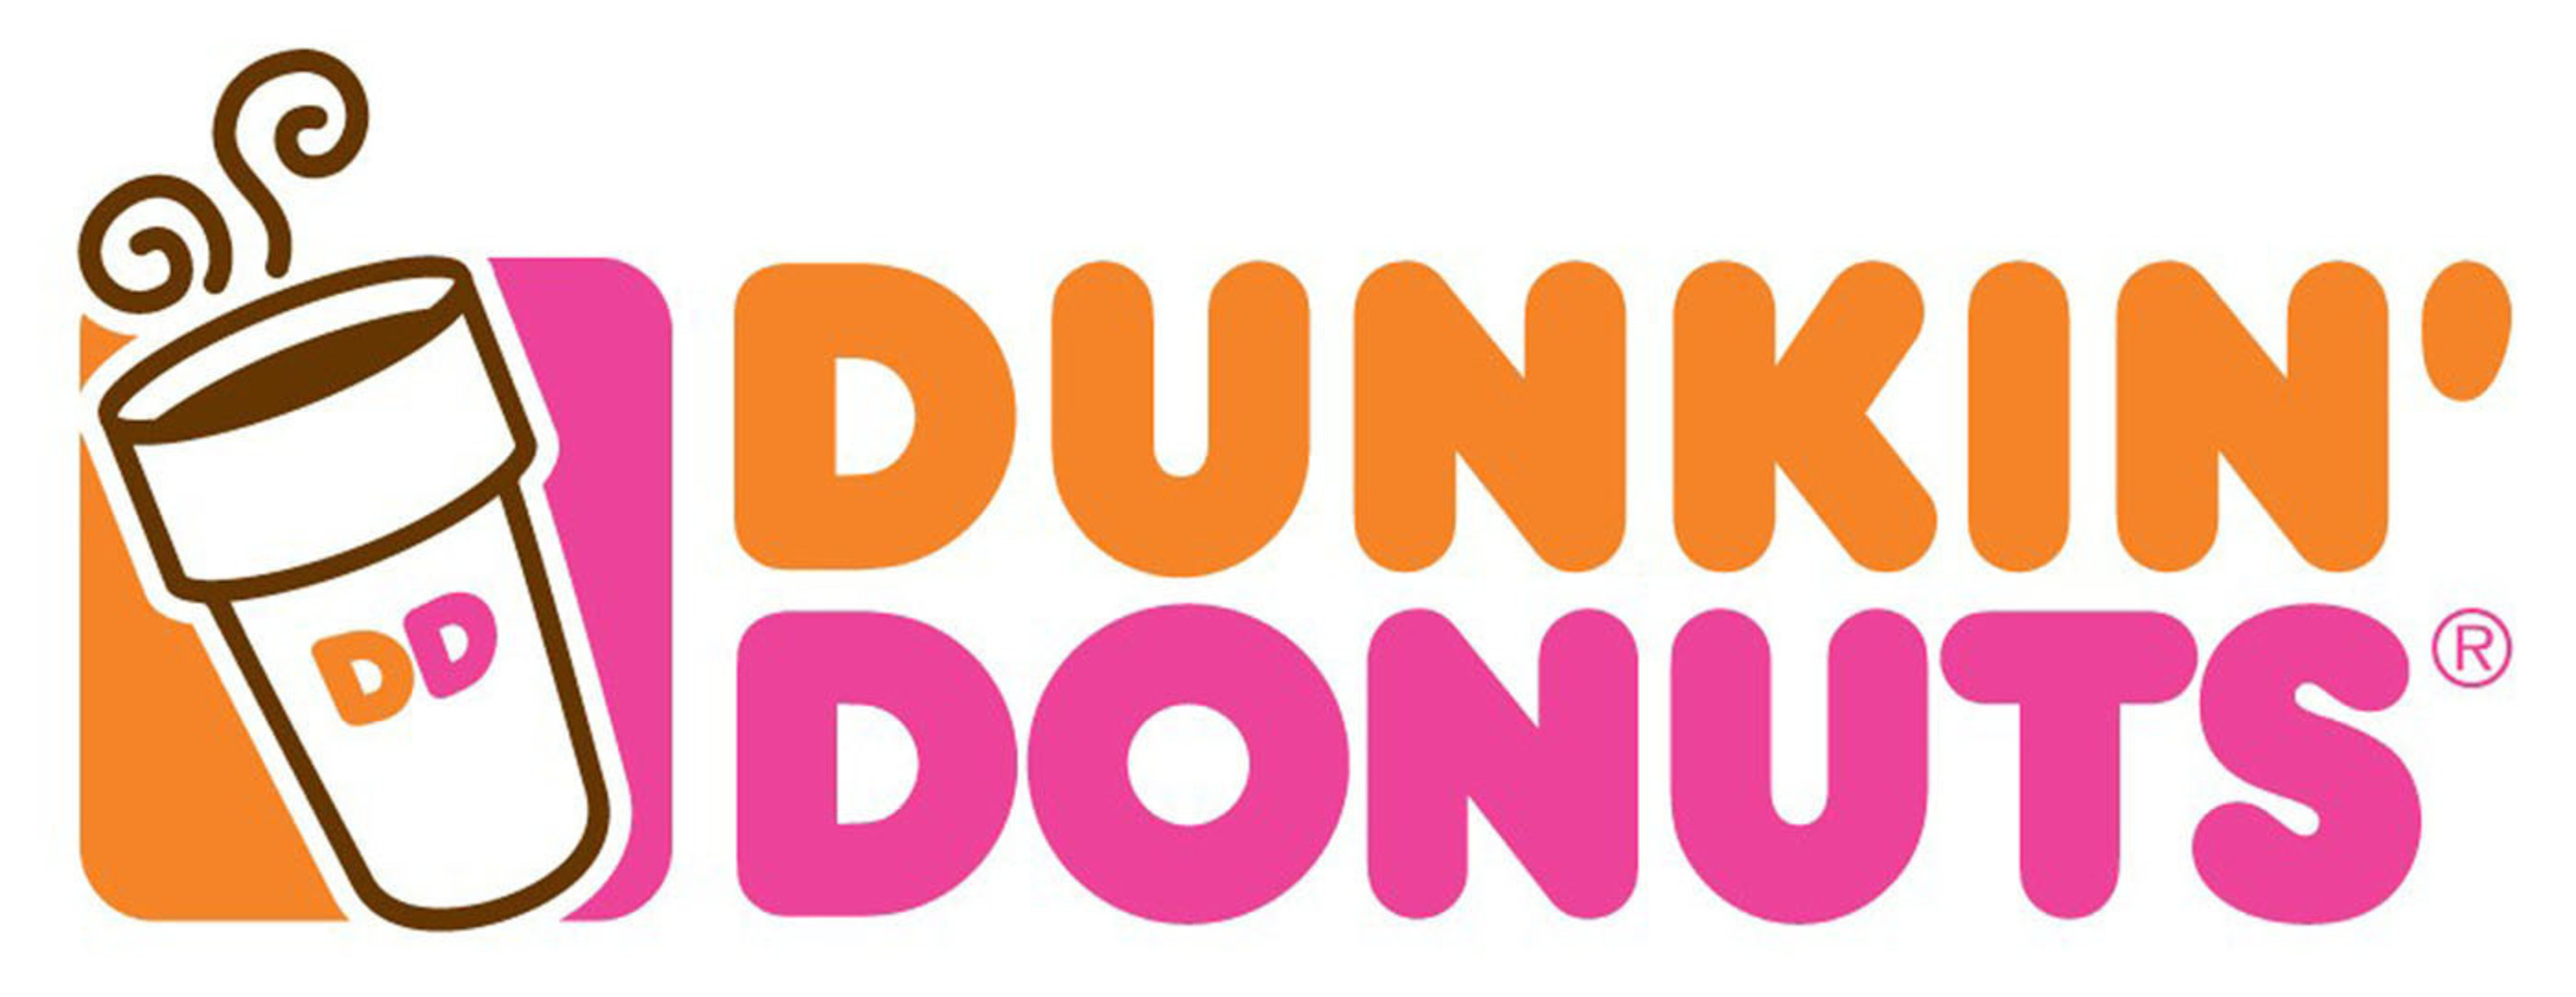 Dunkin' Donuts Hot Logo. (PRNewsFoto/Dunkin' Donuts) (PRNewsFoto/Dunkin' Donuts)